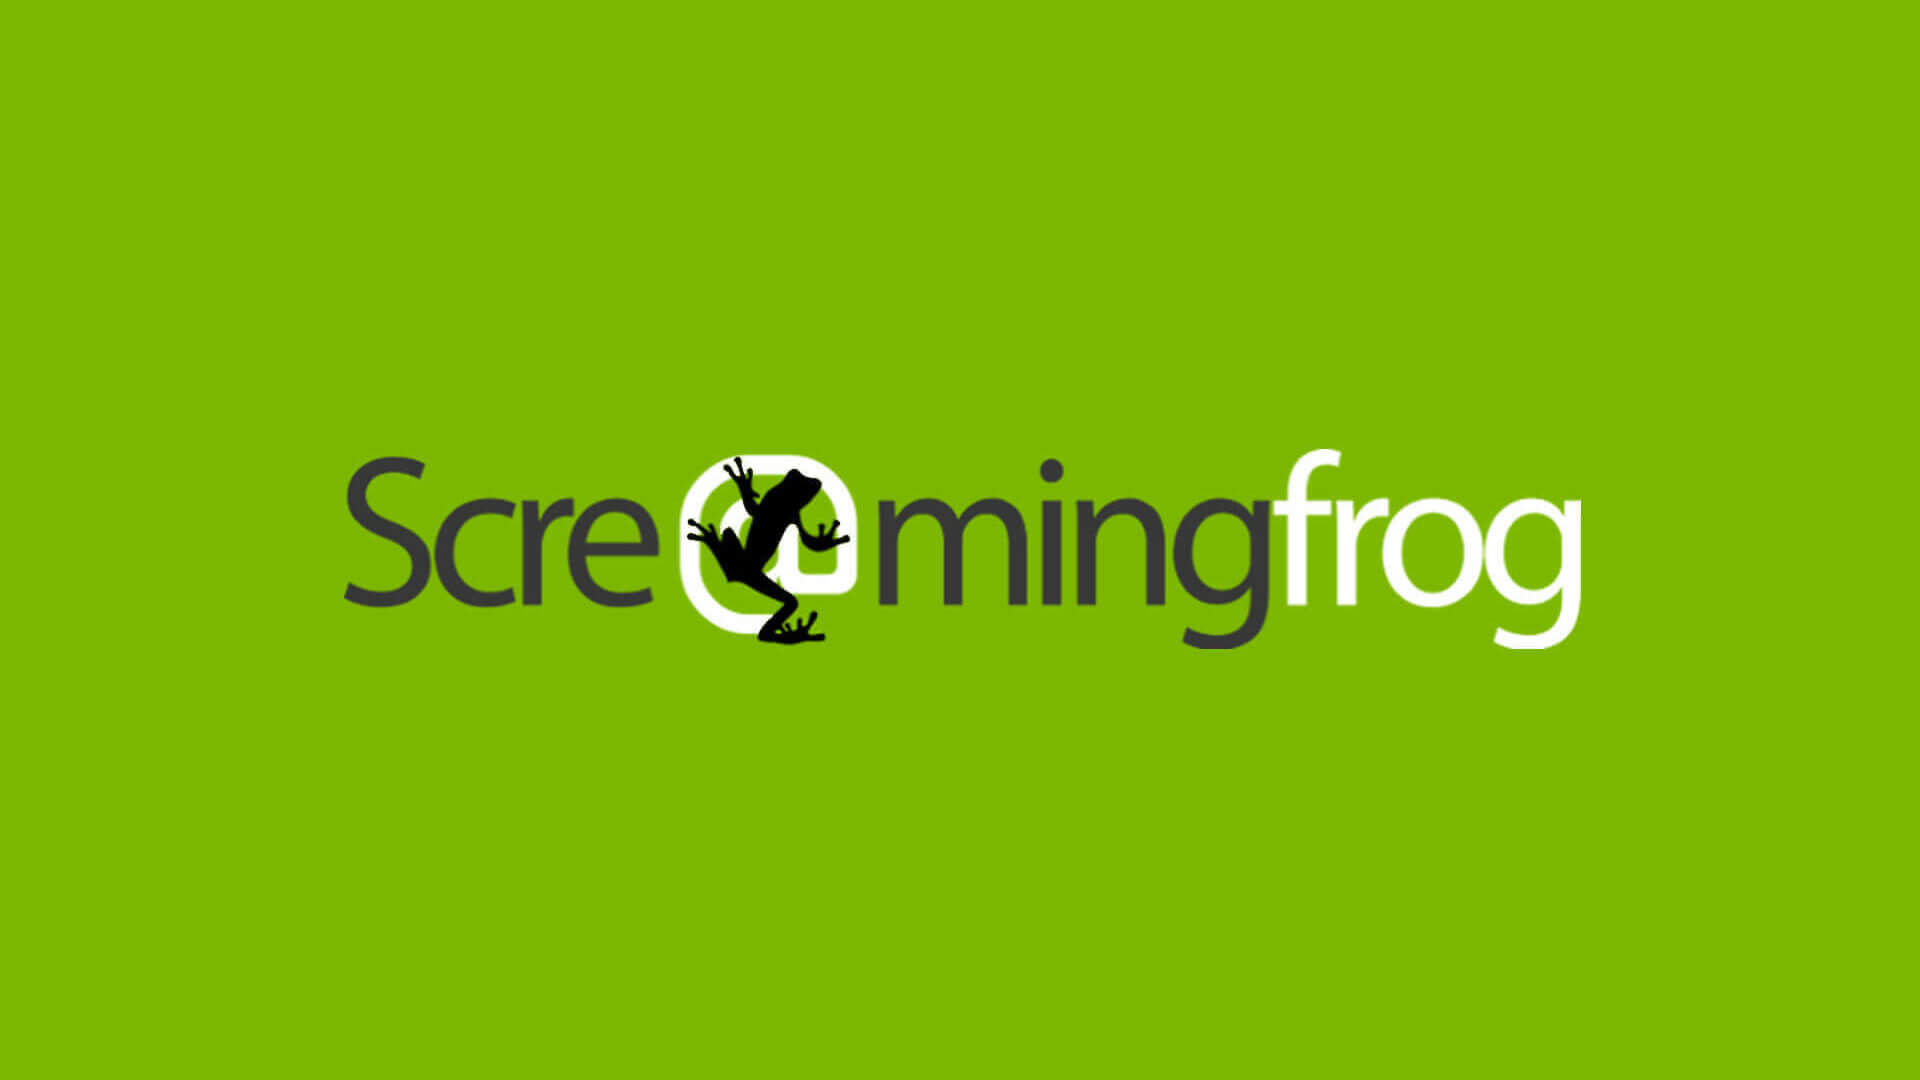 Купить ✅ Screaming Frog SEO Spider ? лицензионный ключ 1 год недорого, выбор у разных продавцов с разными способами оплаты. Моментальная доставка.